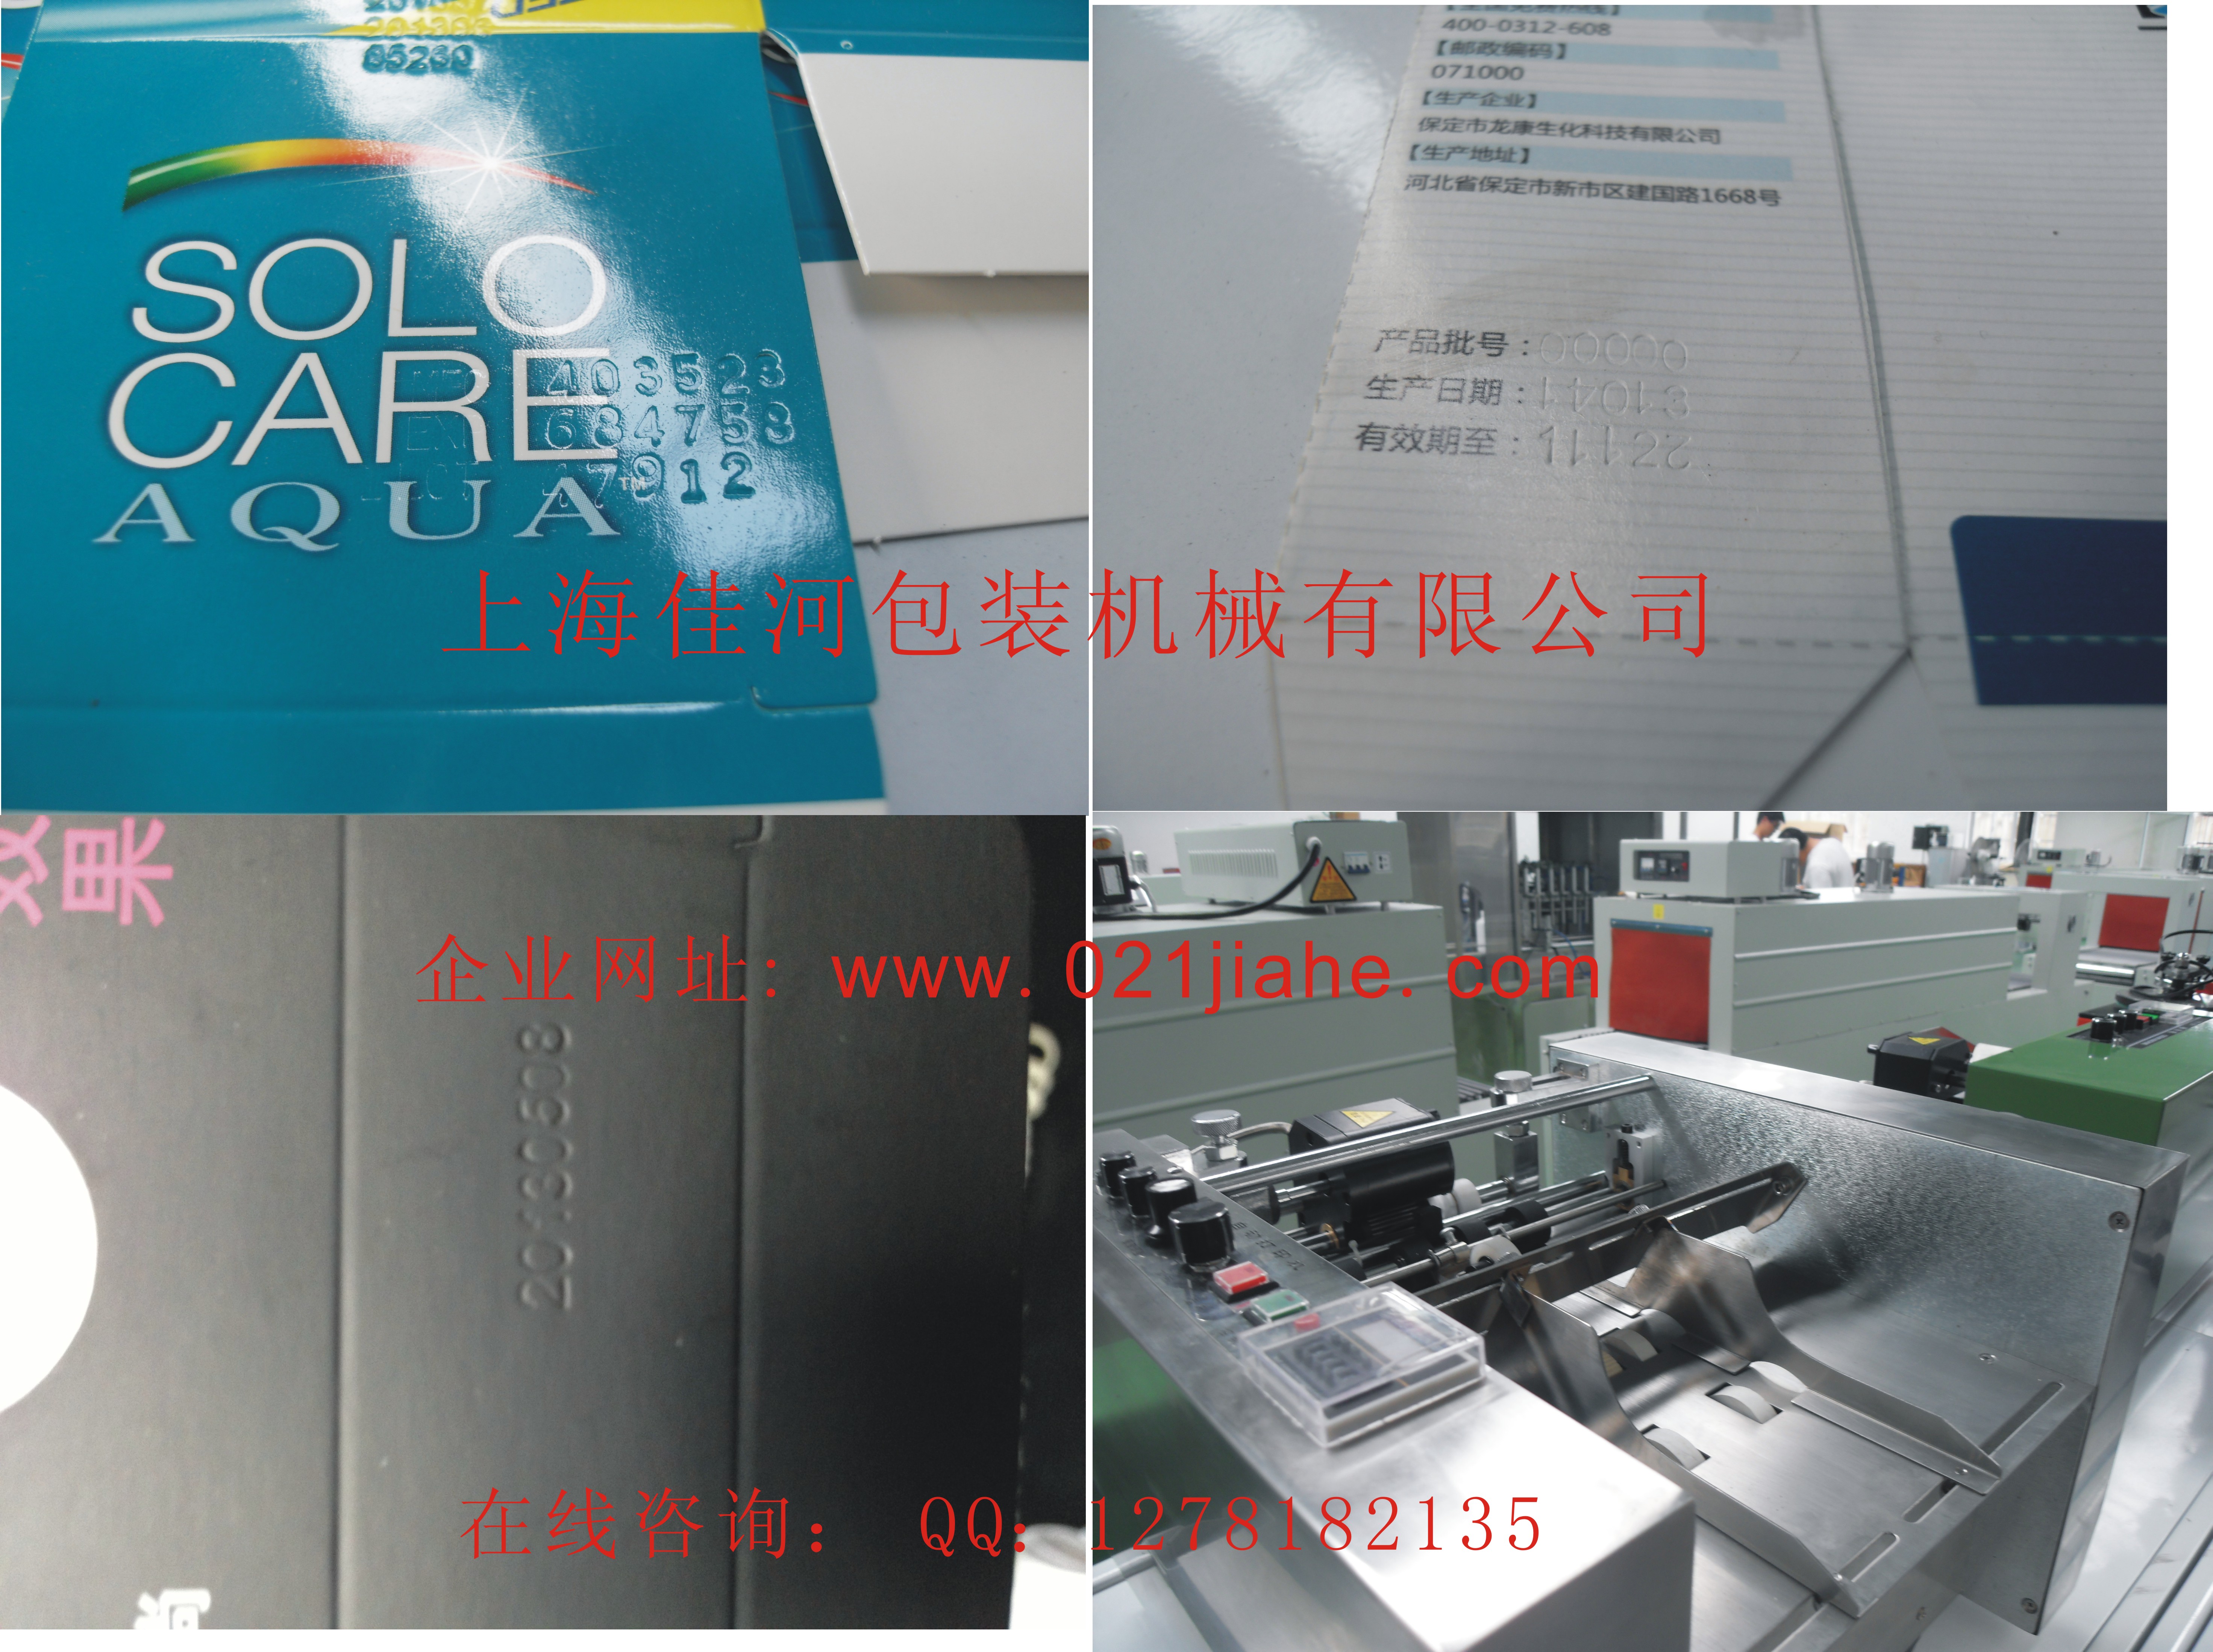 供应打码设备MY-380F标示机、上海打码喷码机系列、印字机生产供应厂家、食品饮料医药等行业的生产日期批号重量等的印字机